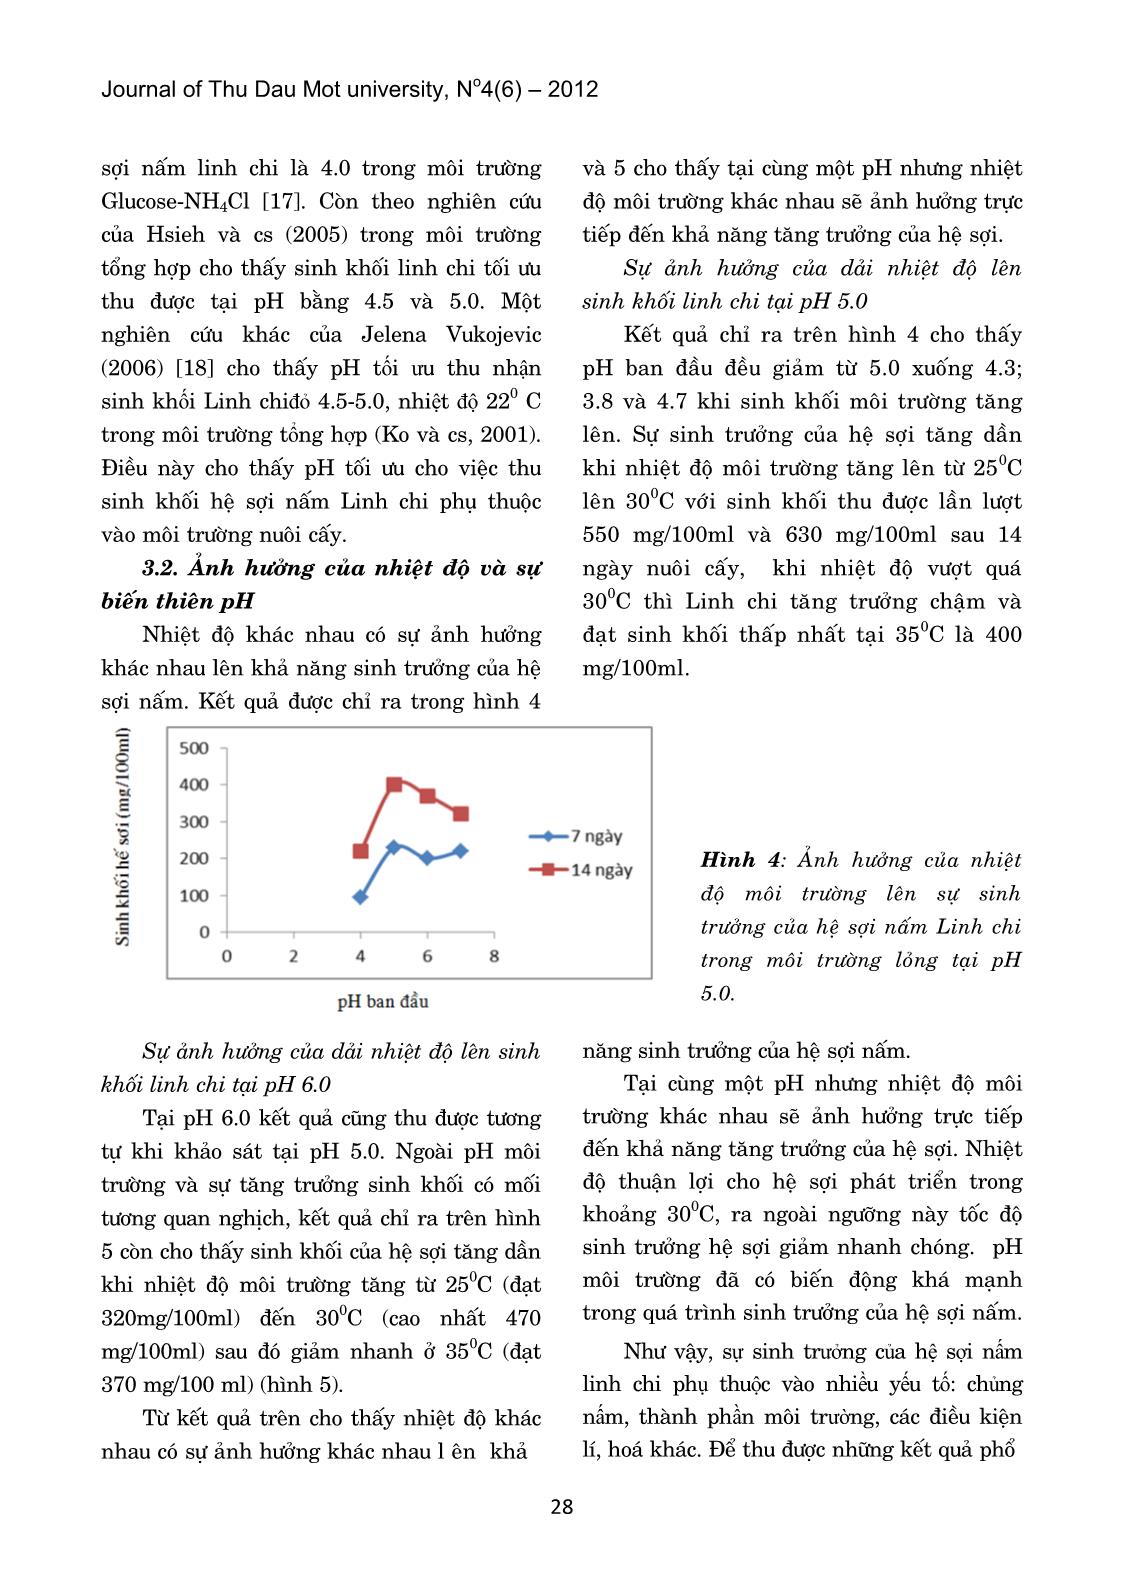 Ảnh hưởng của Ph và nhiệt độ lên sự sinh trưởng của hệ sợi nấm linh chi trong điều kiện nuôi cấy huyền phu trang 4